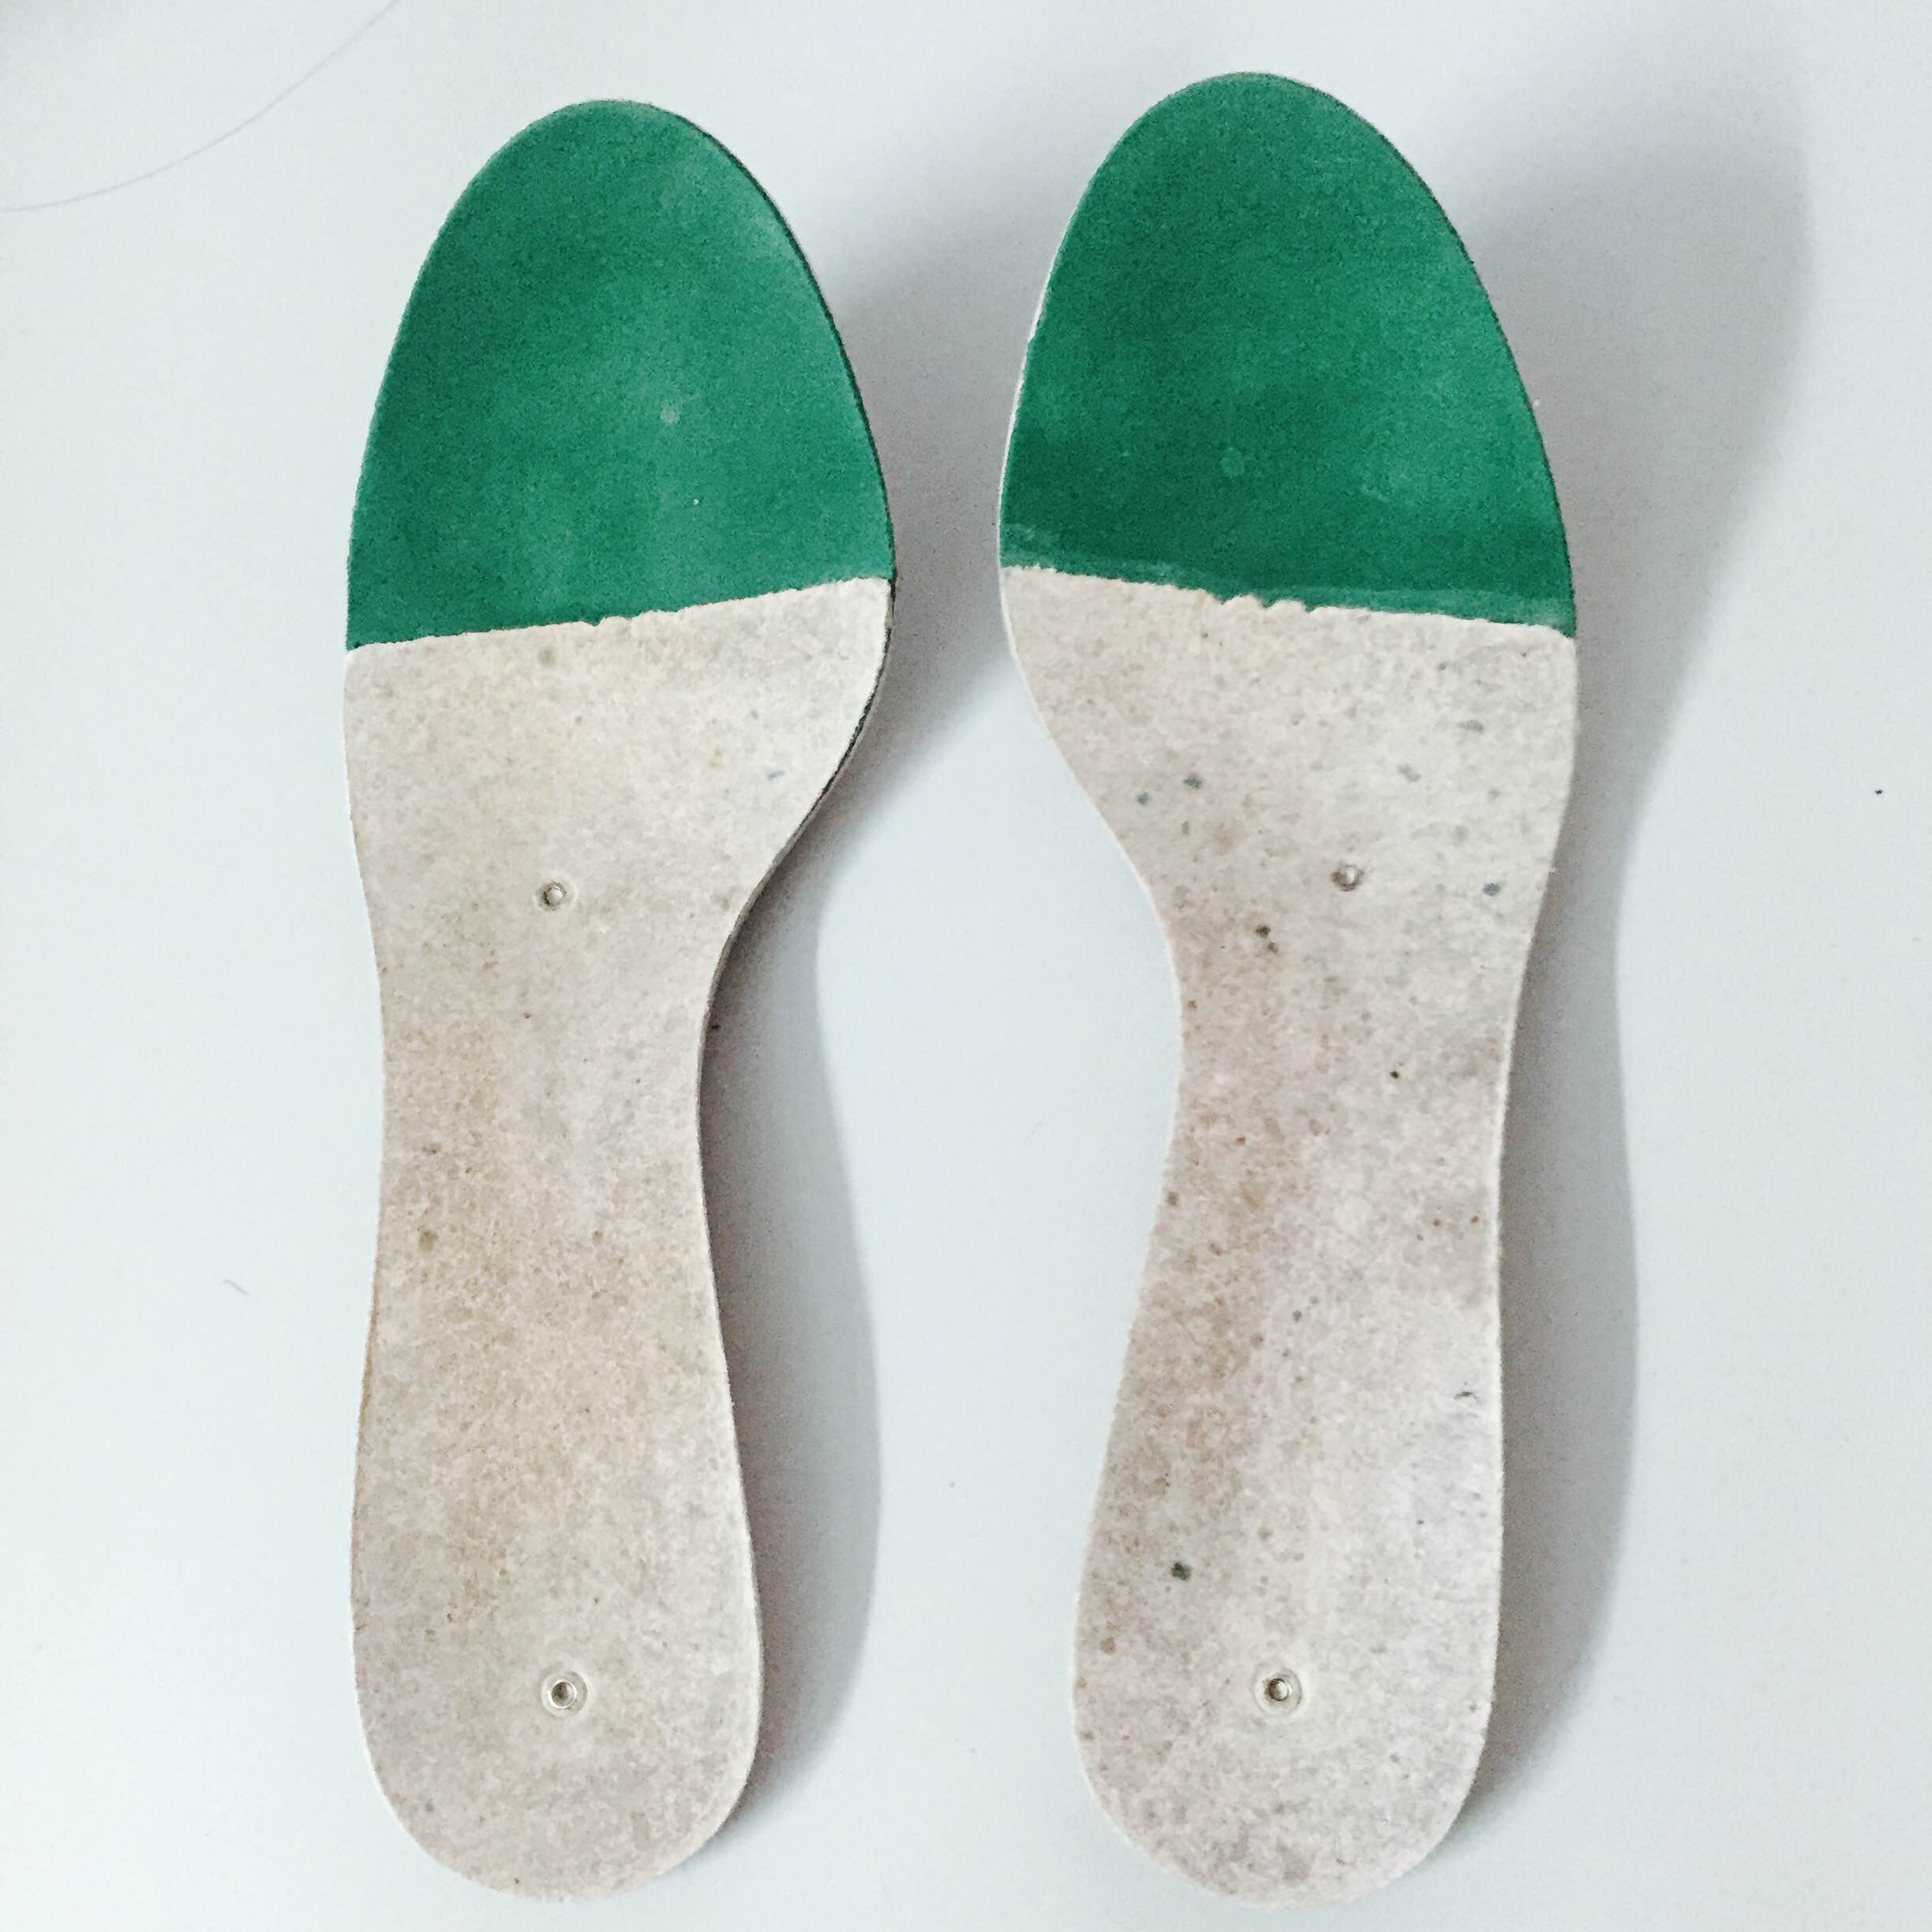 Sườn Giày Sandal - Công Ty TNHH Thương Mại Sản Xuất Sơn Long